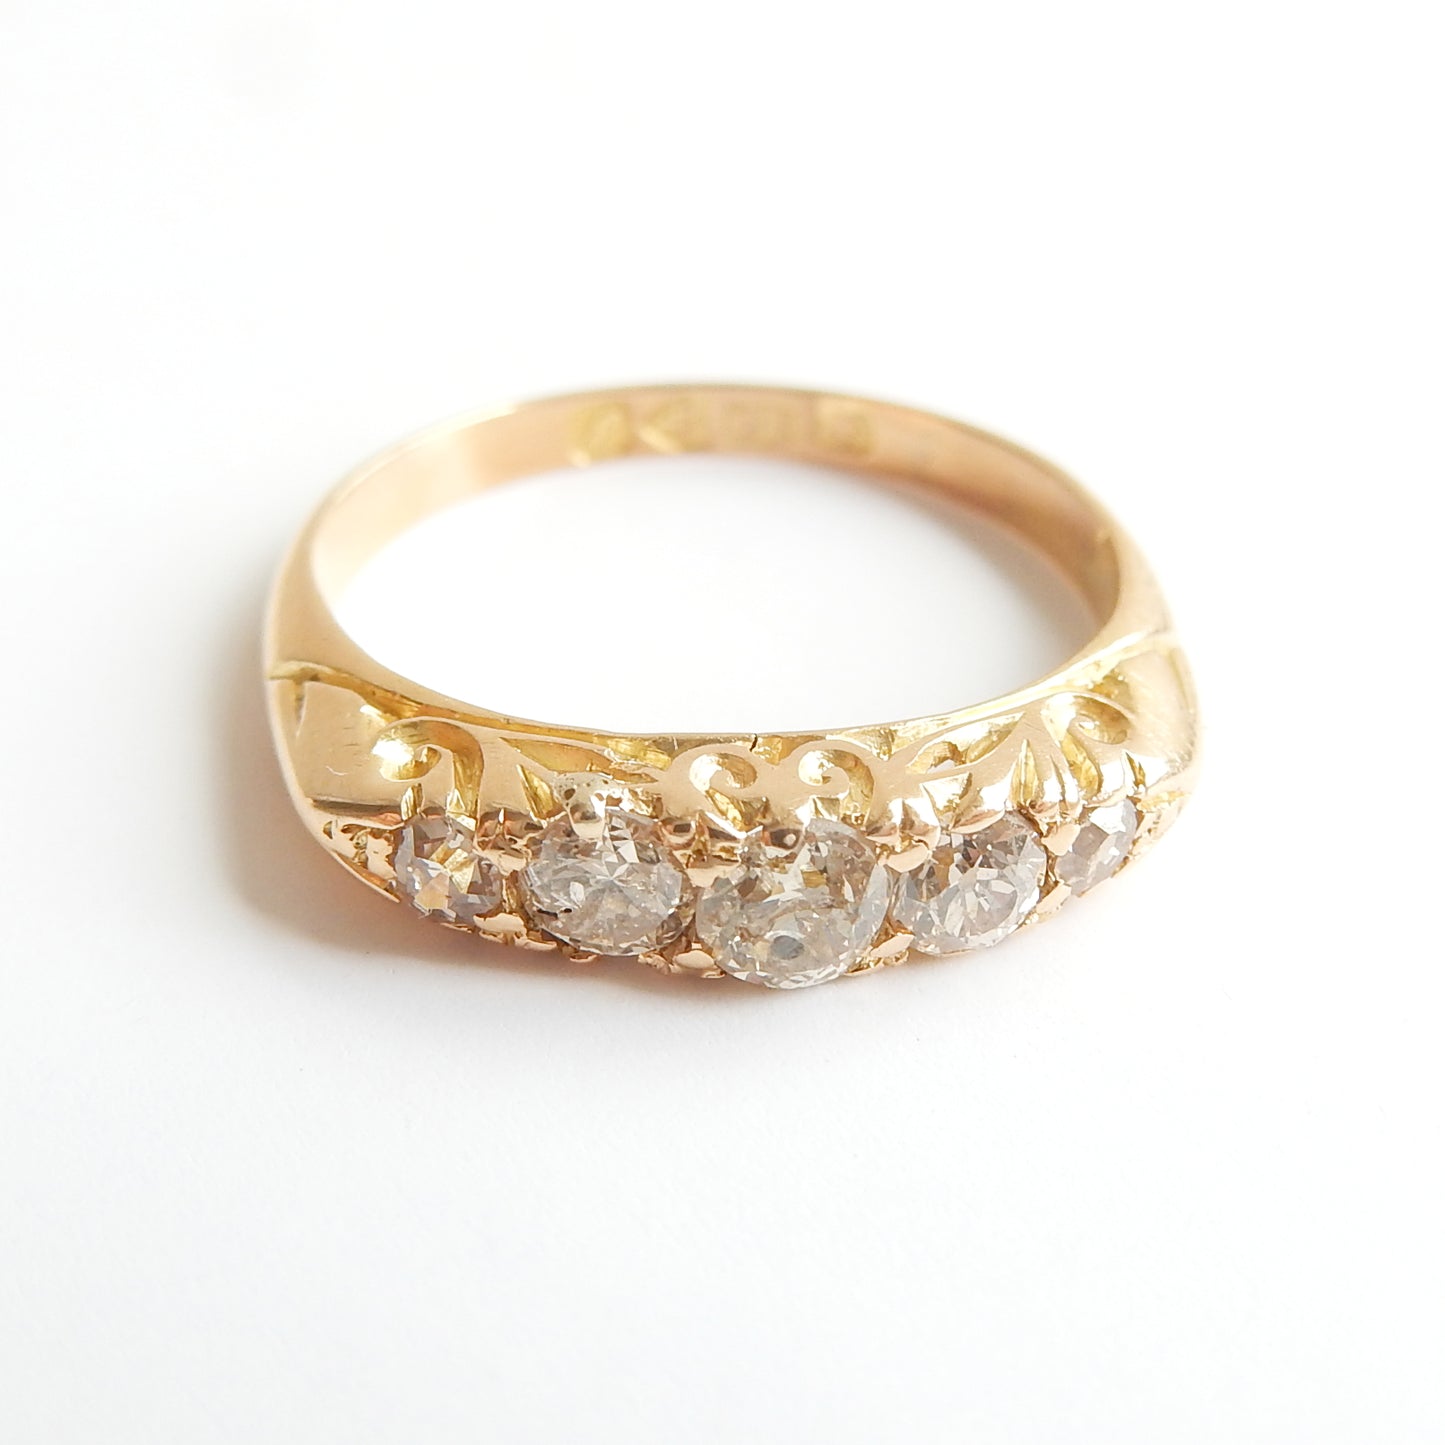 Antique Edwardian 18ct Gold Diamond Five Stone Ring US Size 4.5 UK K